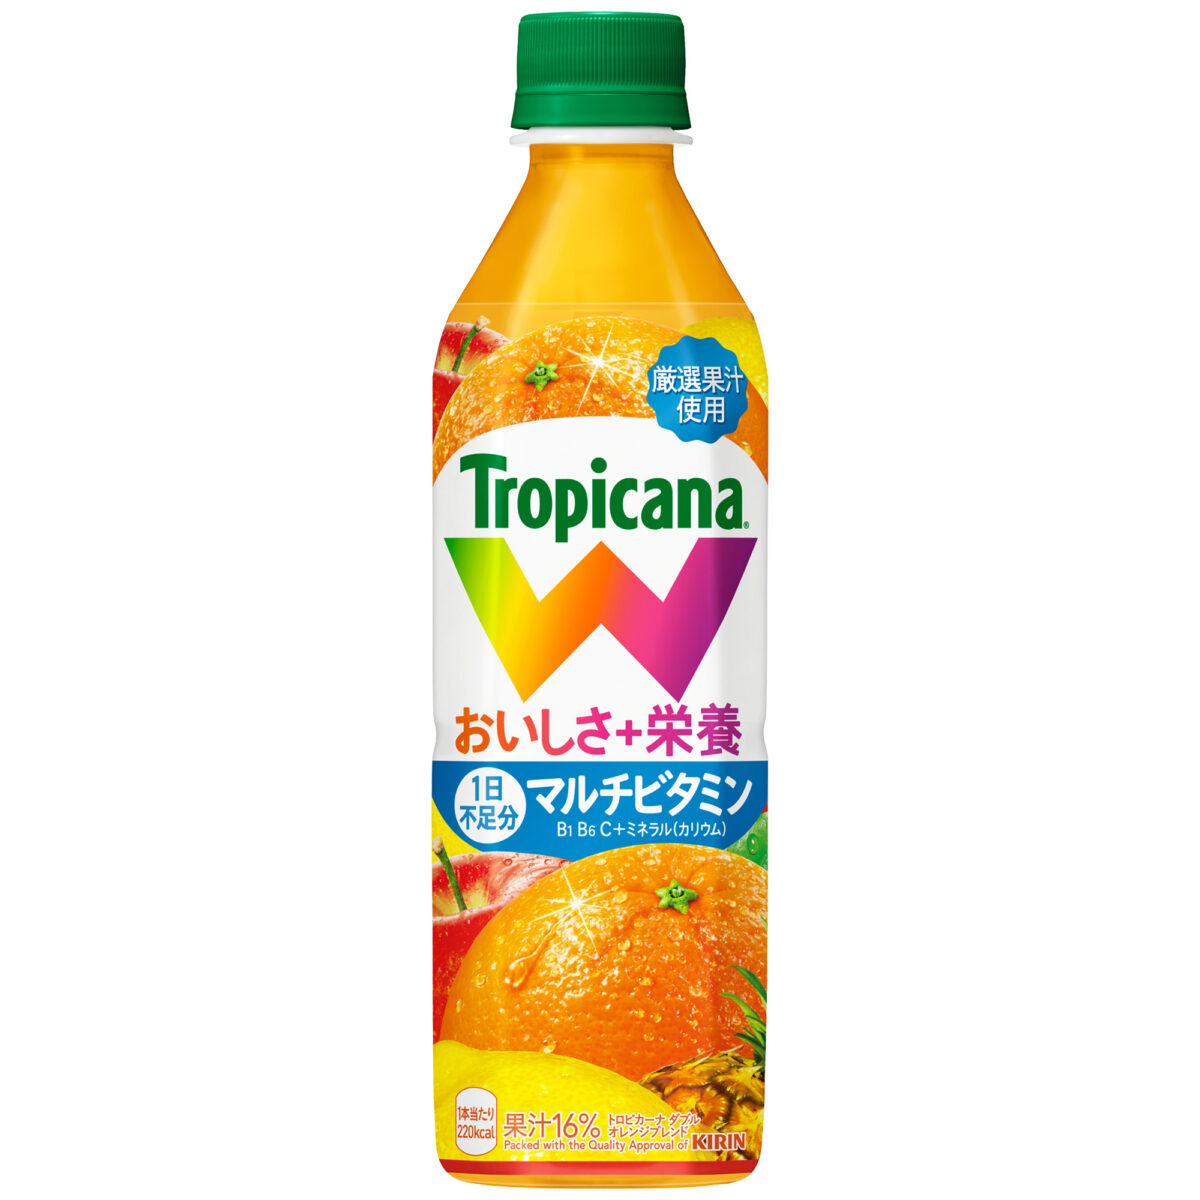 オレンジ果実のおいしさをアップ トロピカーナ Wがリニューアル